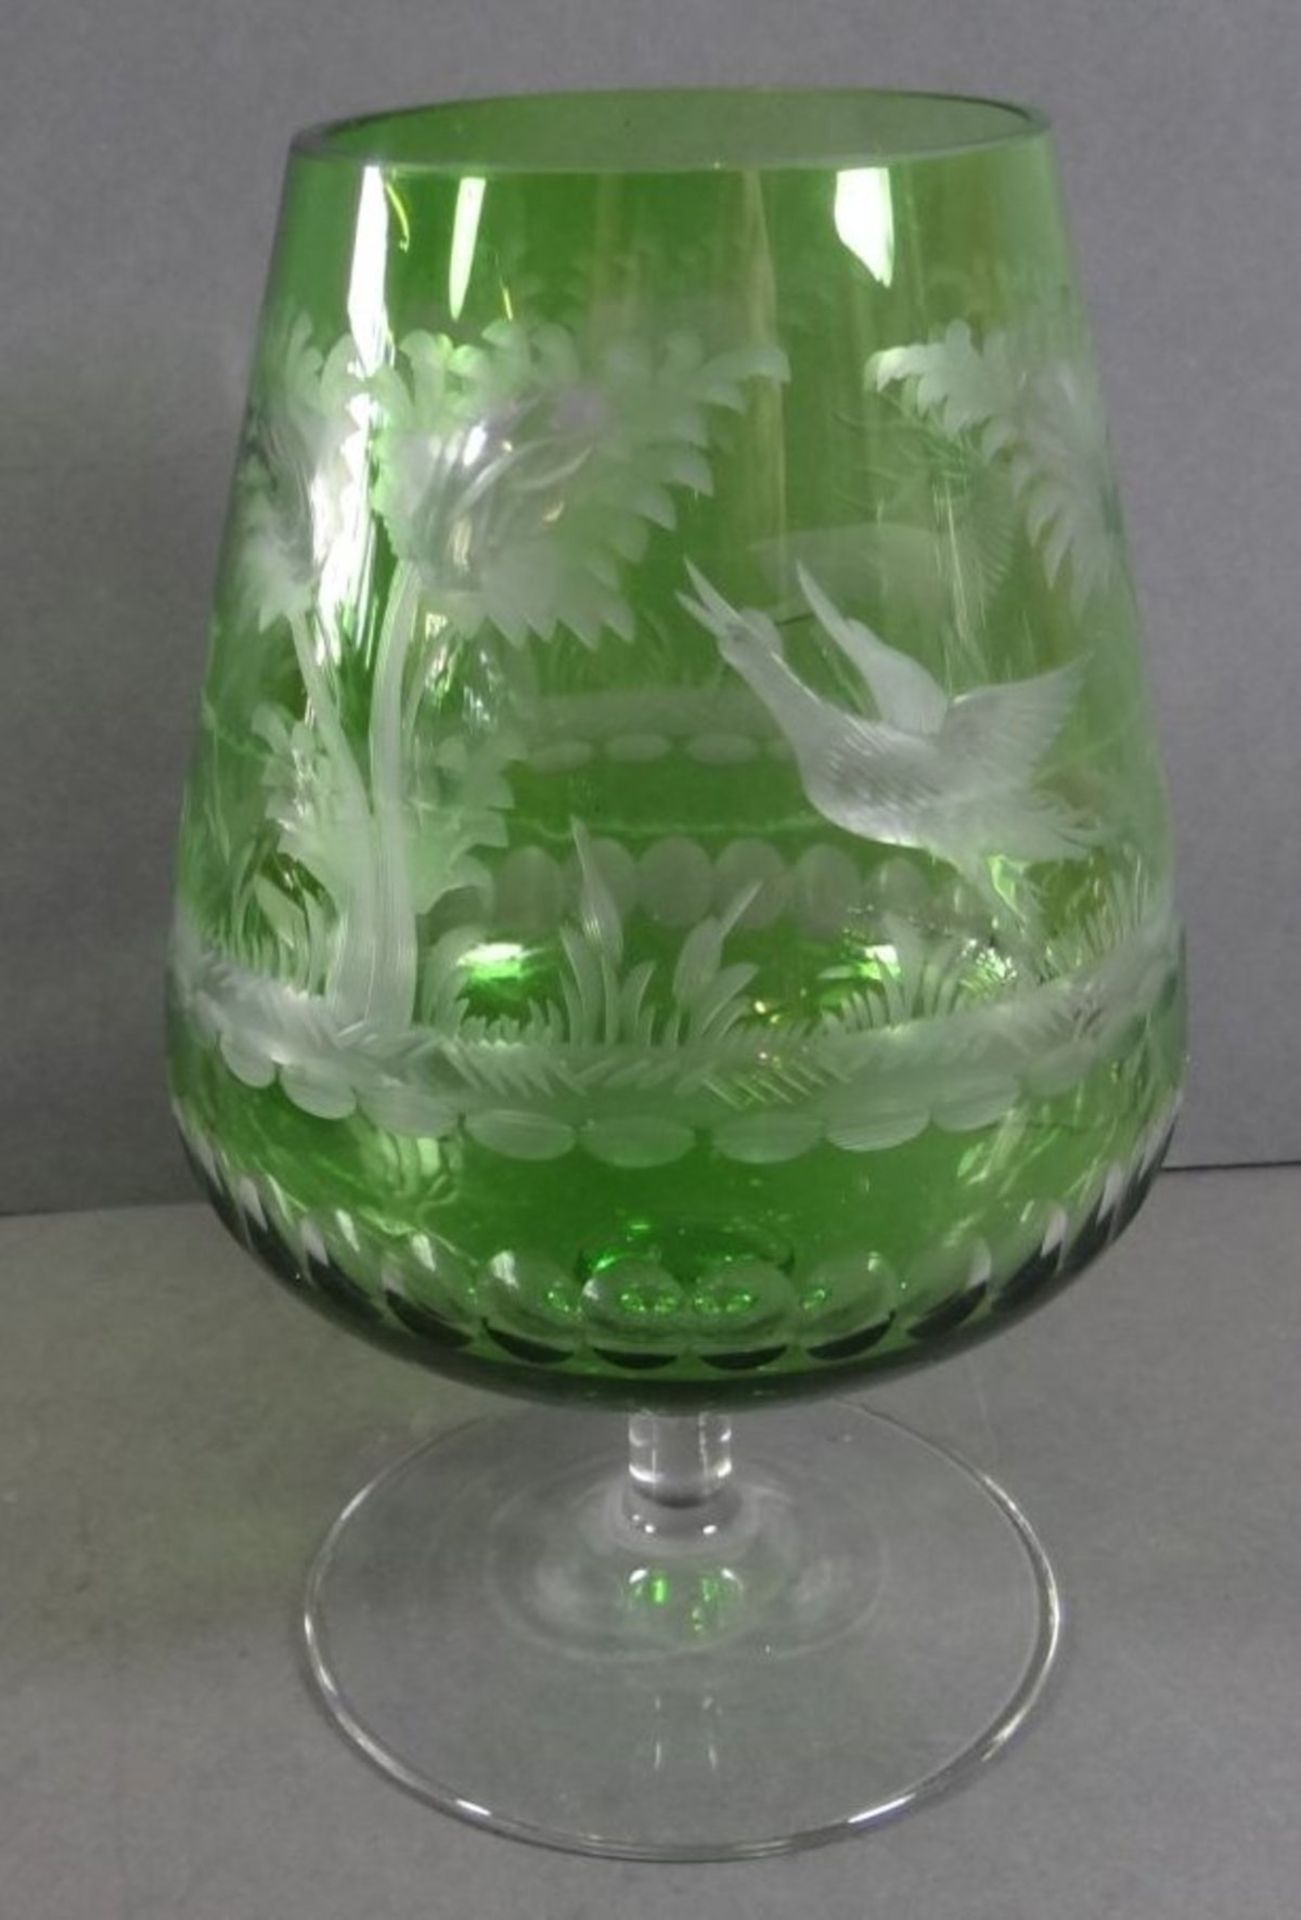 übergrosser Cognac-SDchwenker, grün-klar mit Wild-Motiven, H-18 cm - Bild 4 aus 6